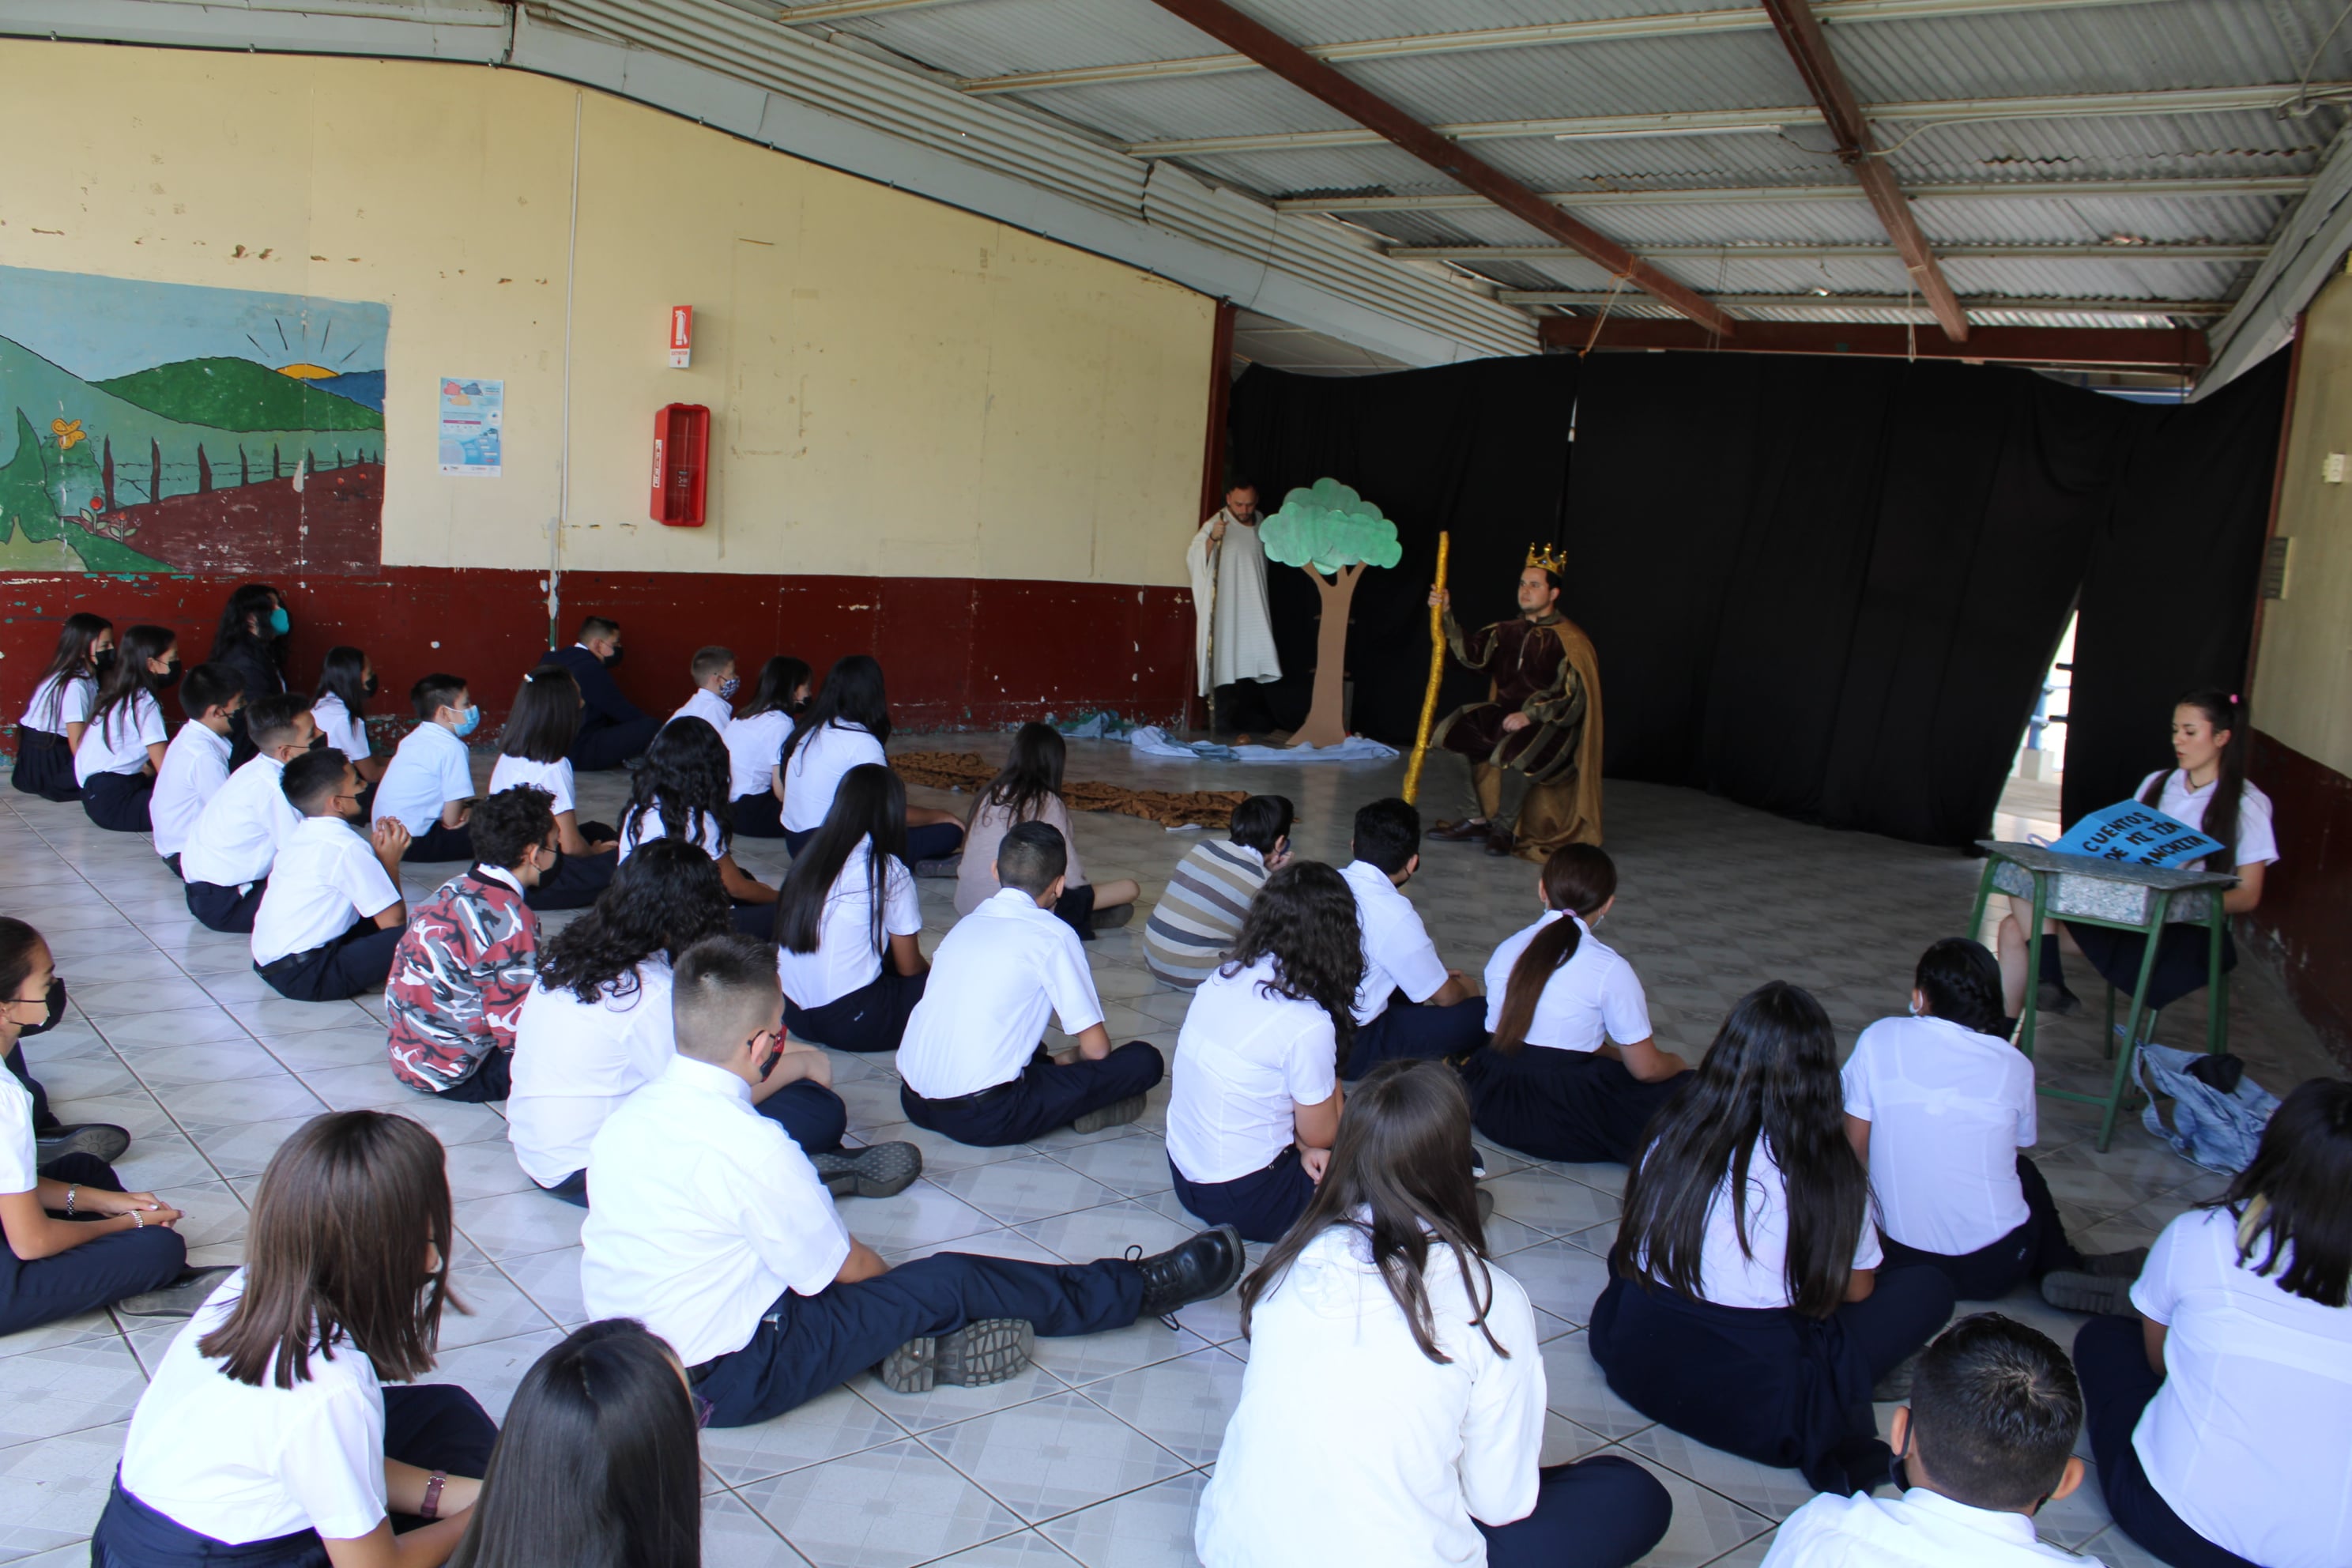 El TCU realizó unas obras de teatro para incentivar la lectura. Fotos por Josué Arévalo Villalobos.